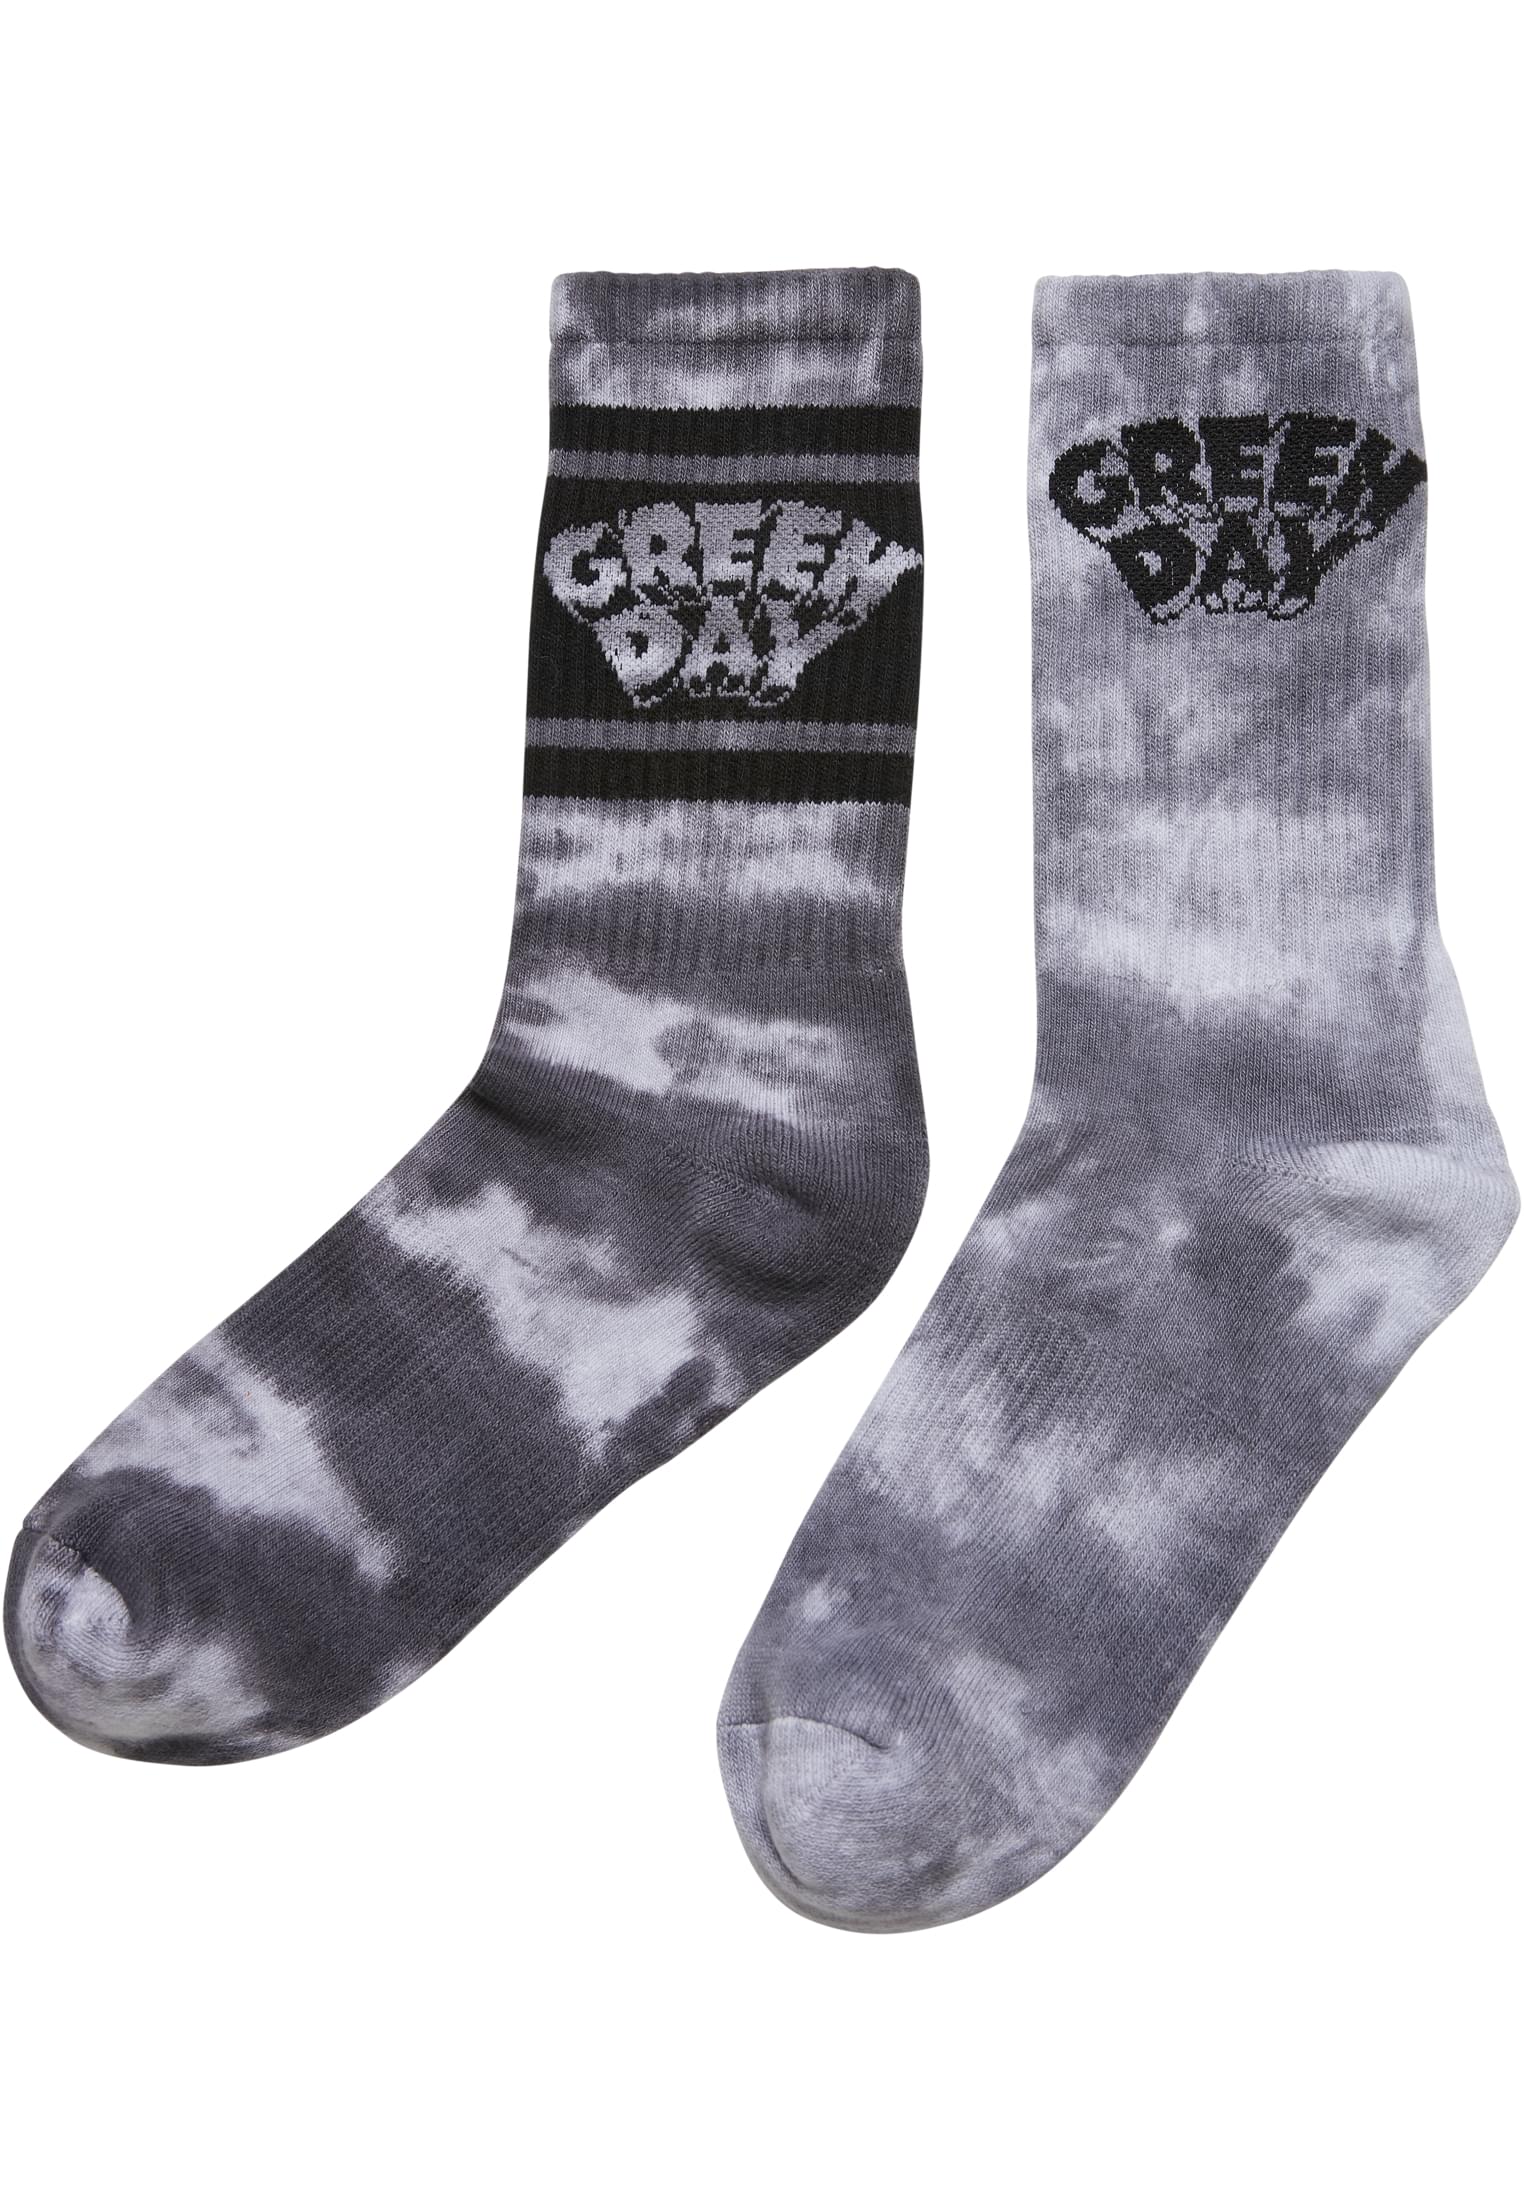 Green Day Socks - 2-Pack Black/White